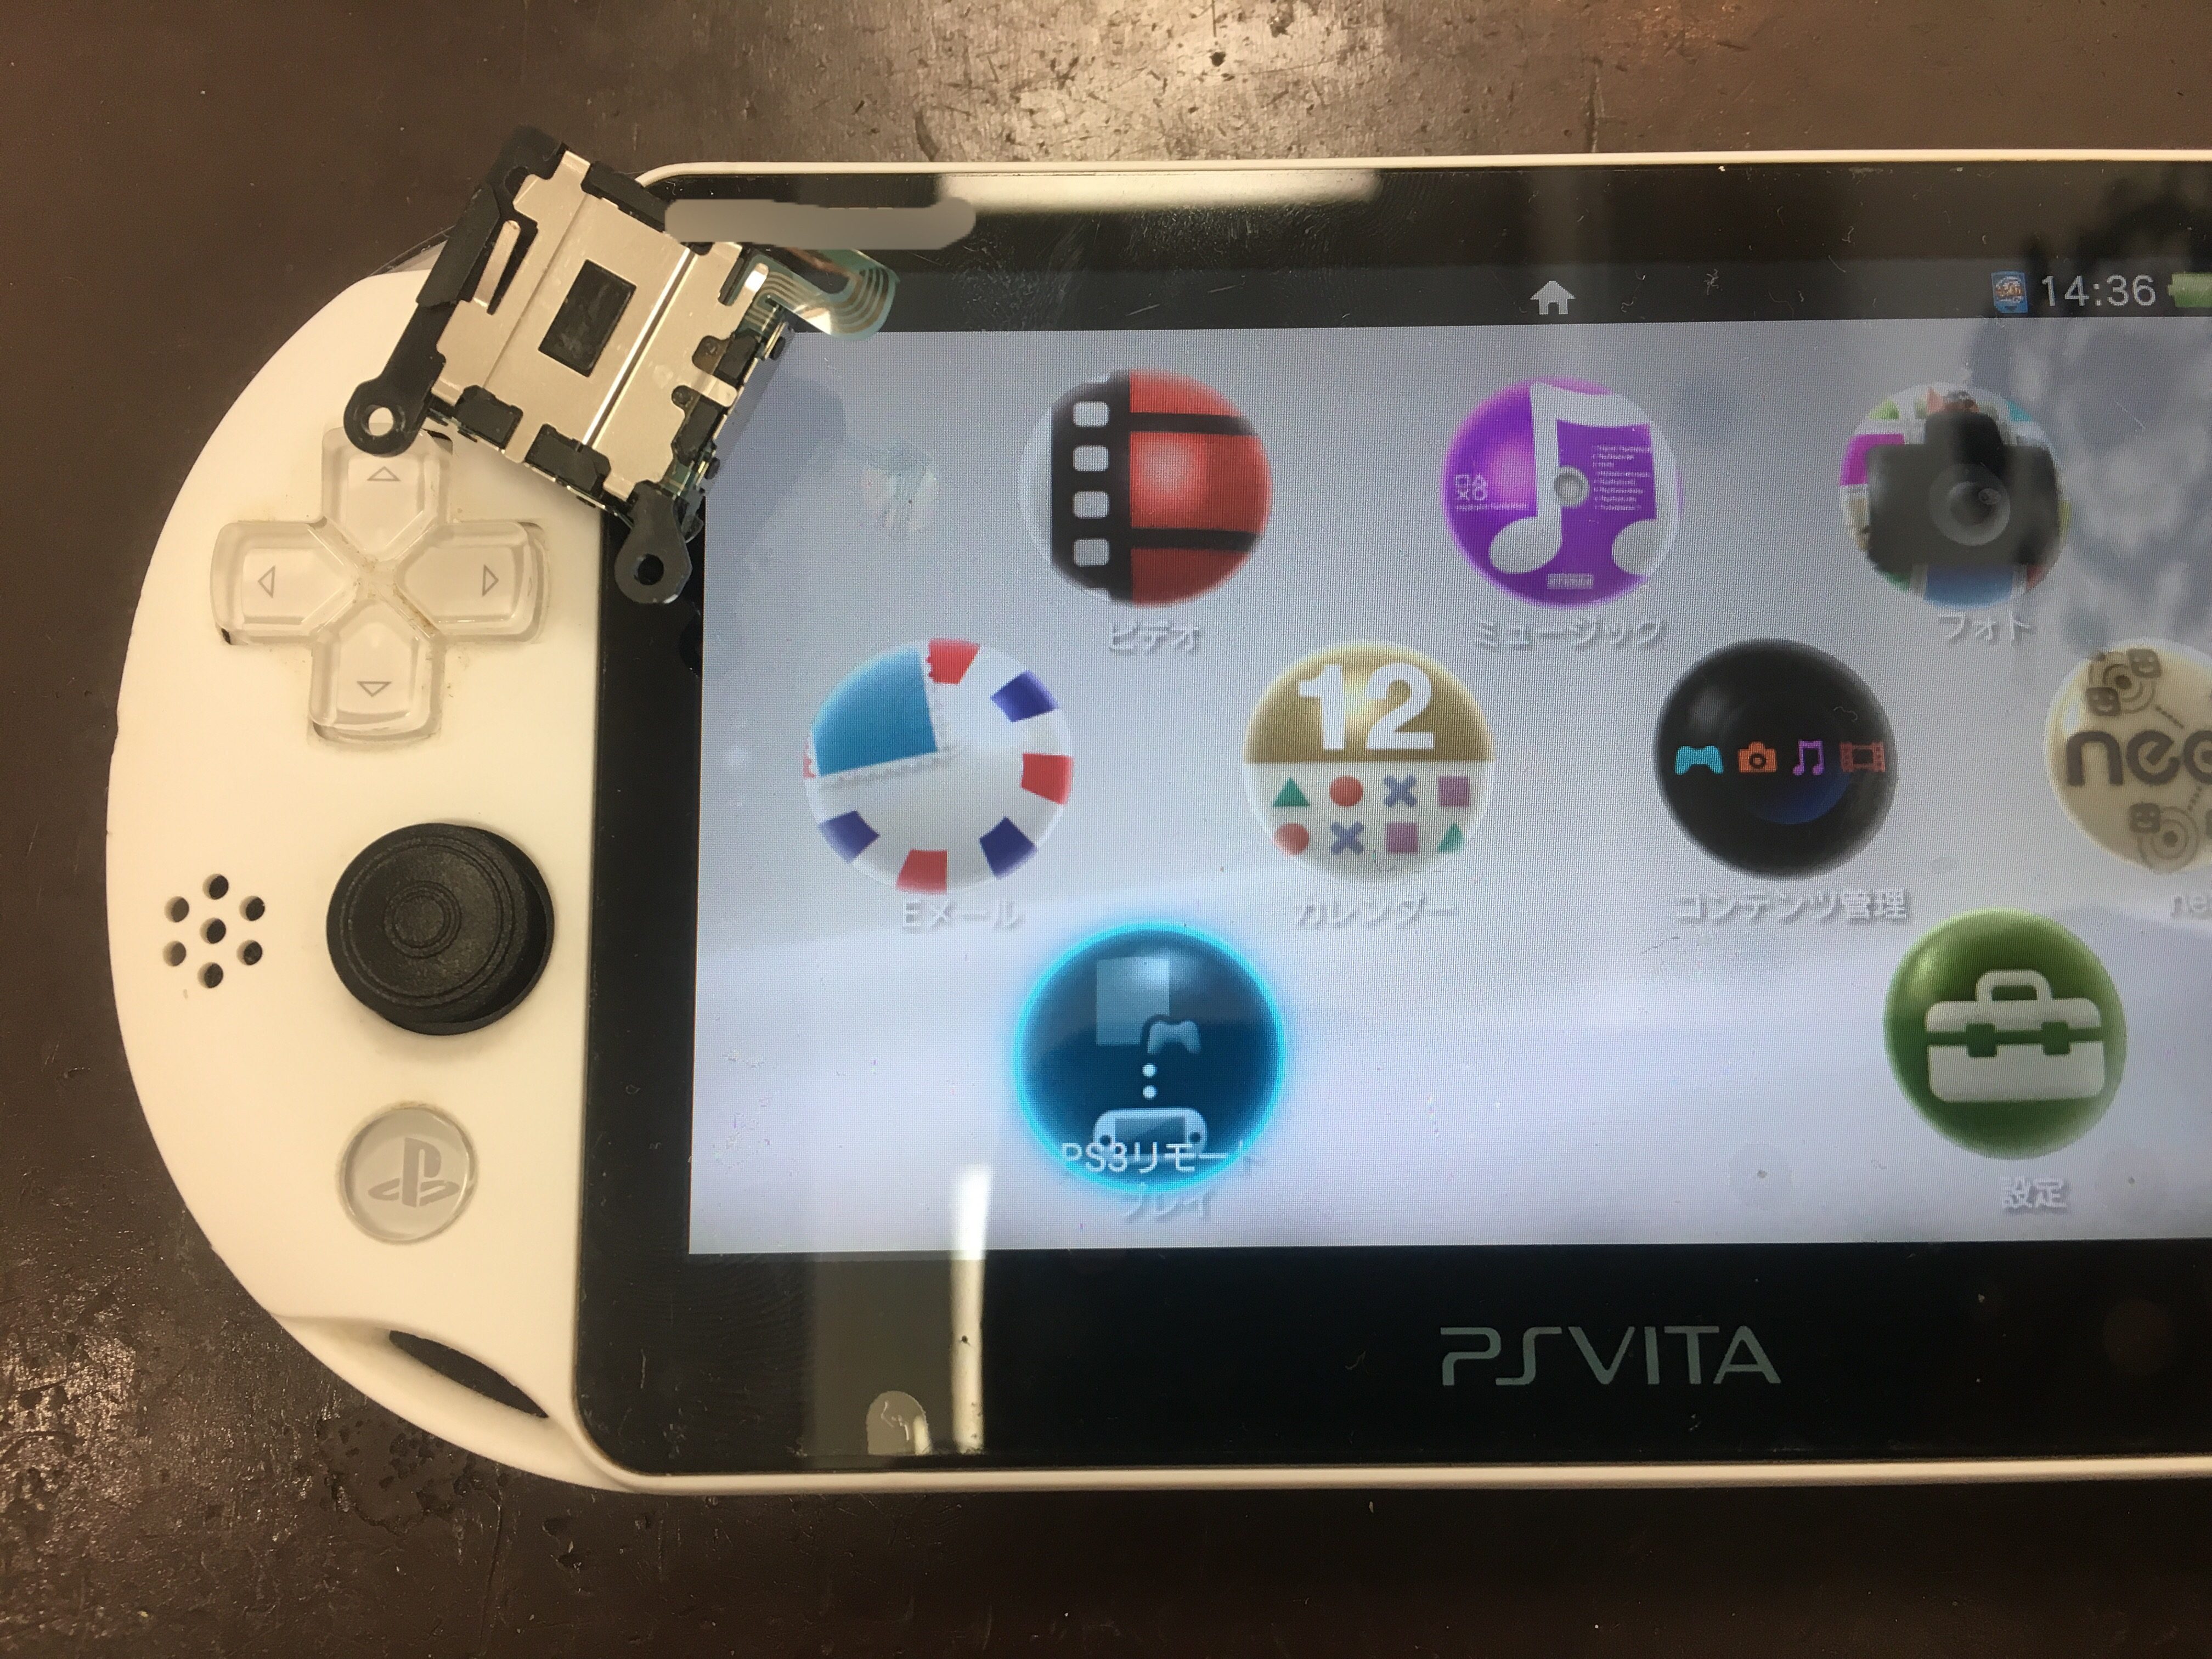 Ps Vita 00のアナログスティックが勝手に動くようになった 部品交換で即日解決しました Nintendo3ds Switch Psp 修理のゲームホスピタル Nintendo3ds ニンテンドーds Psp 修理